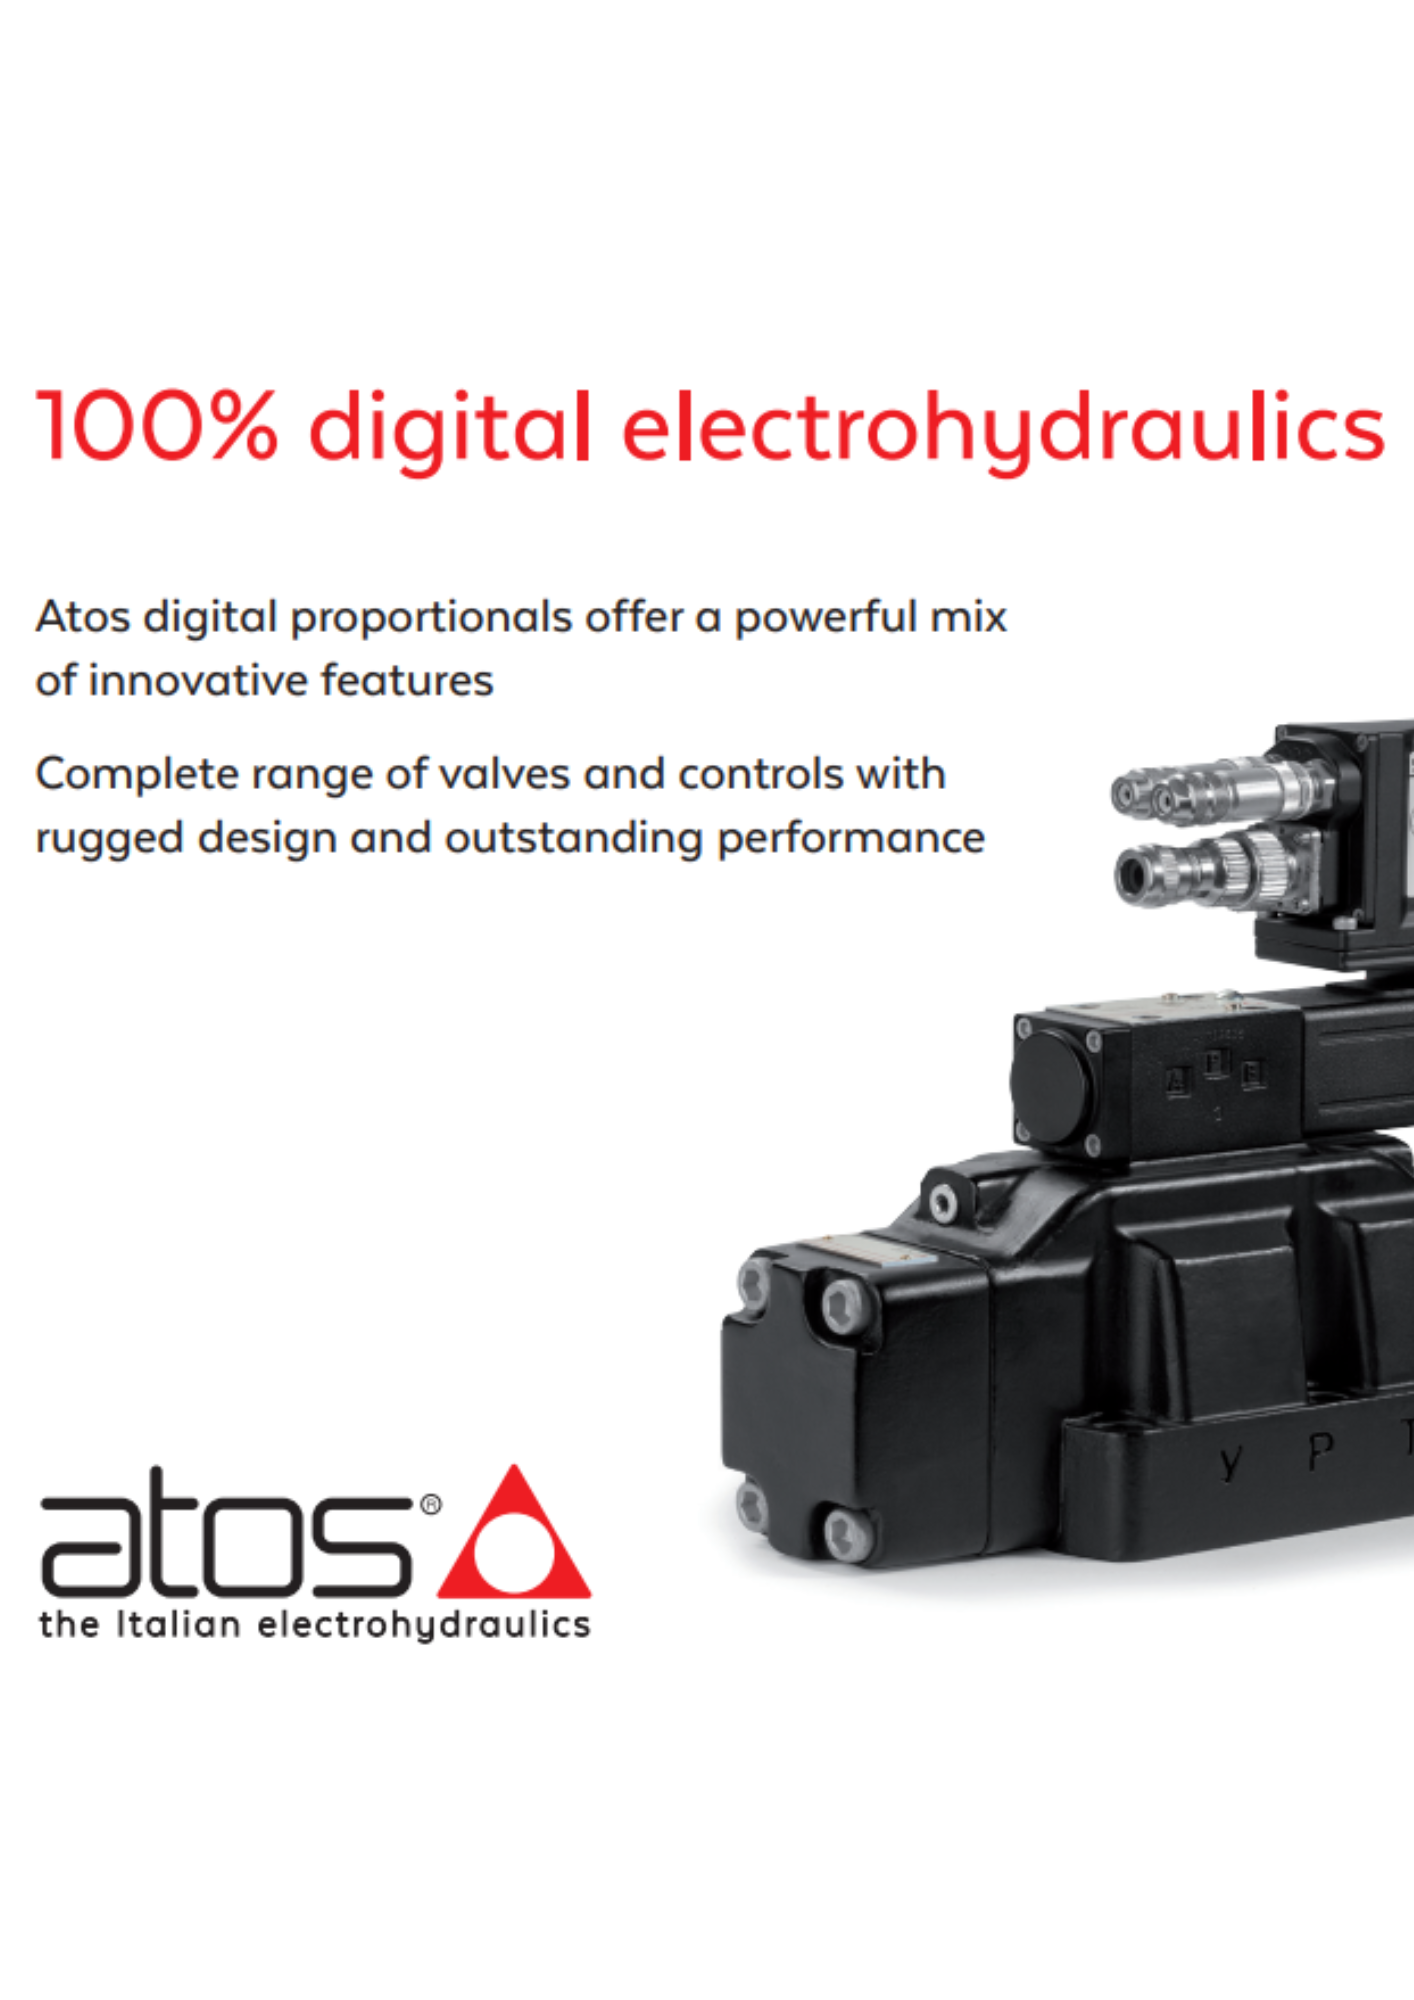 Atos: Digital electrohydraulics